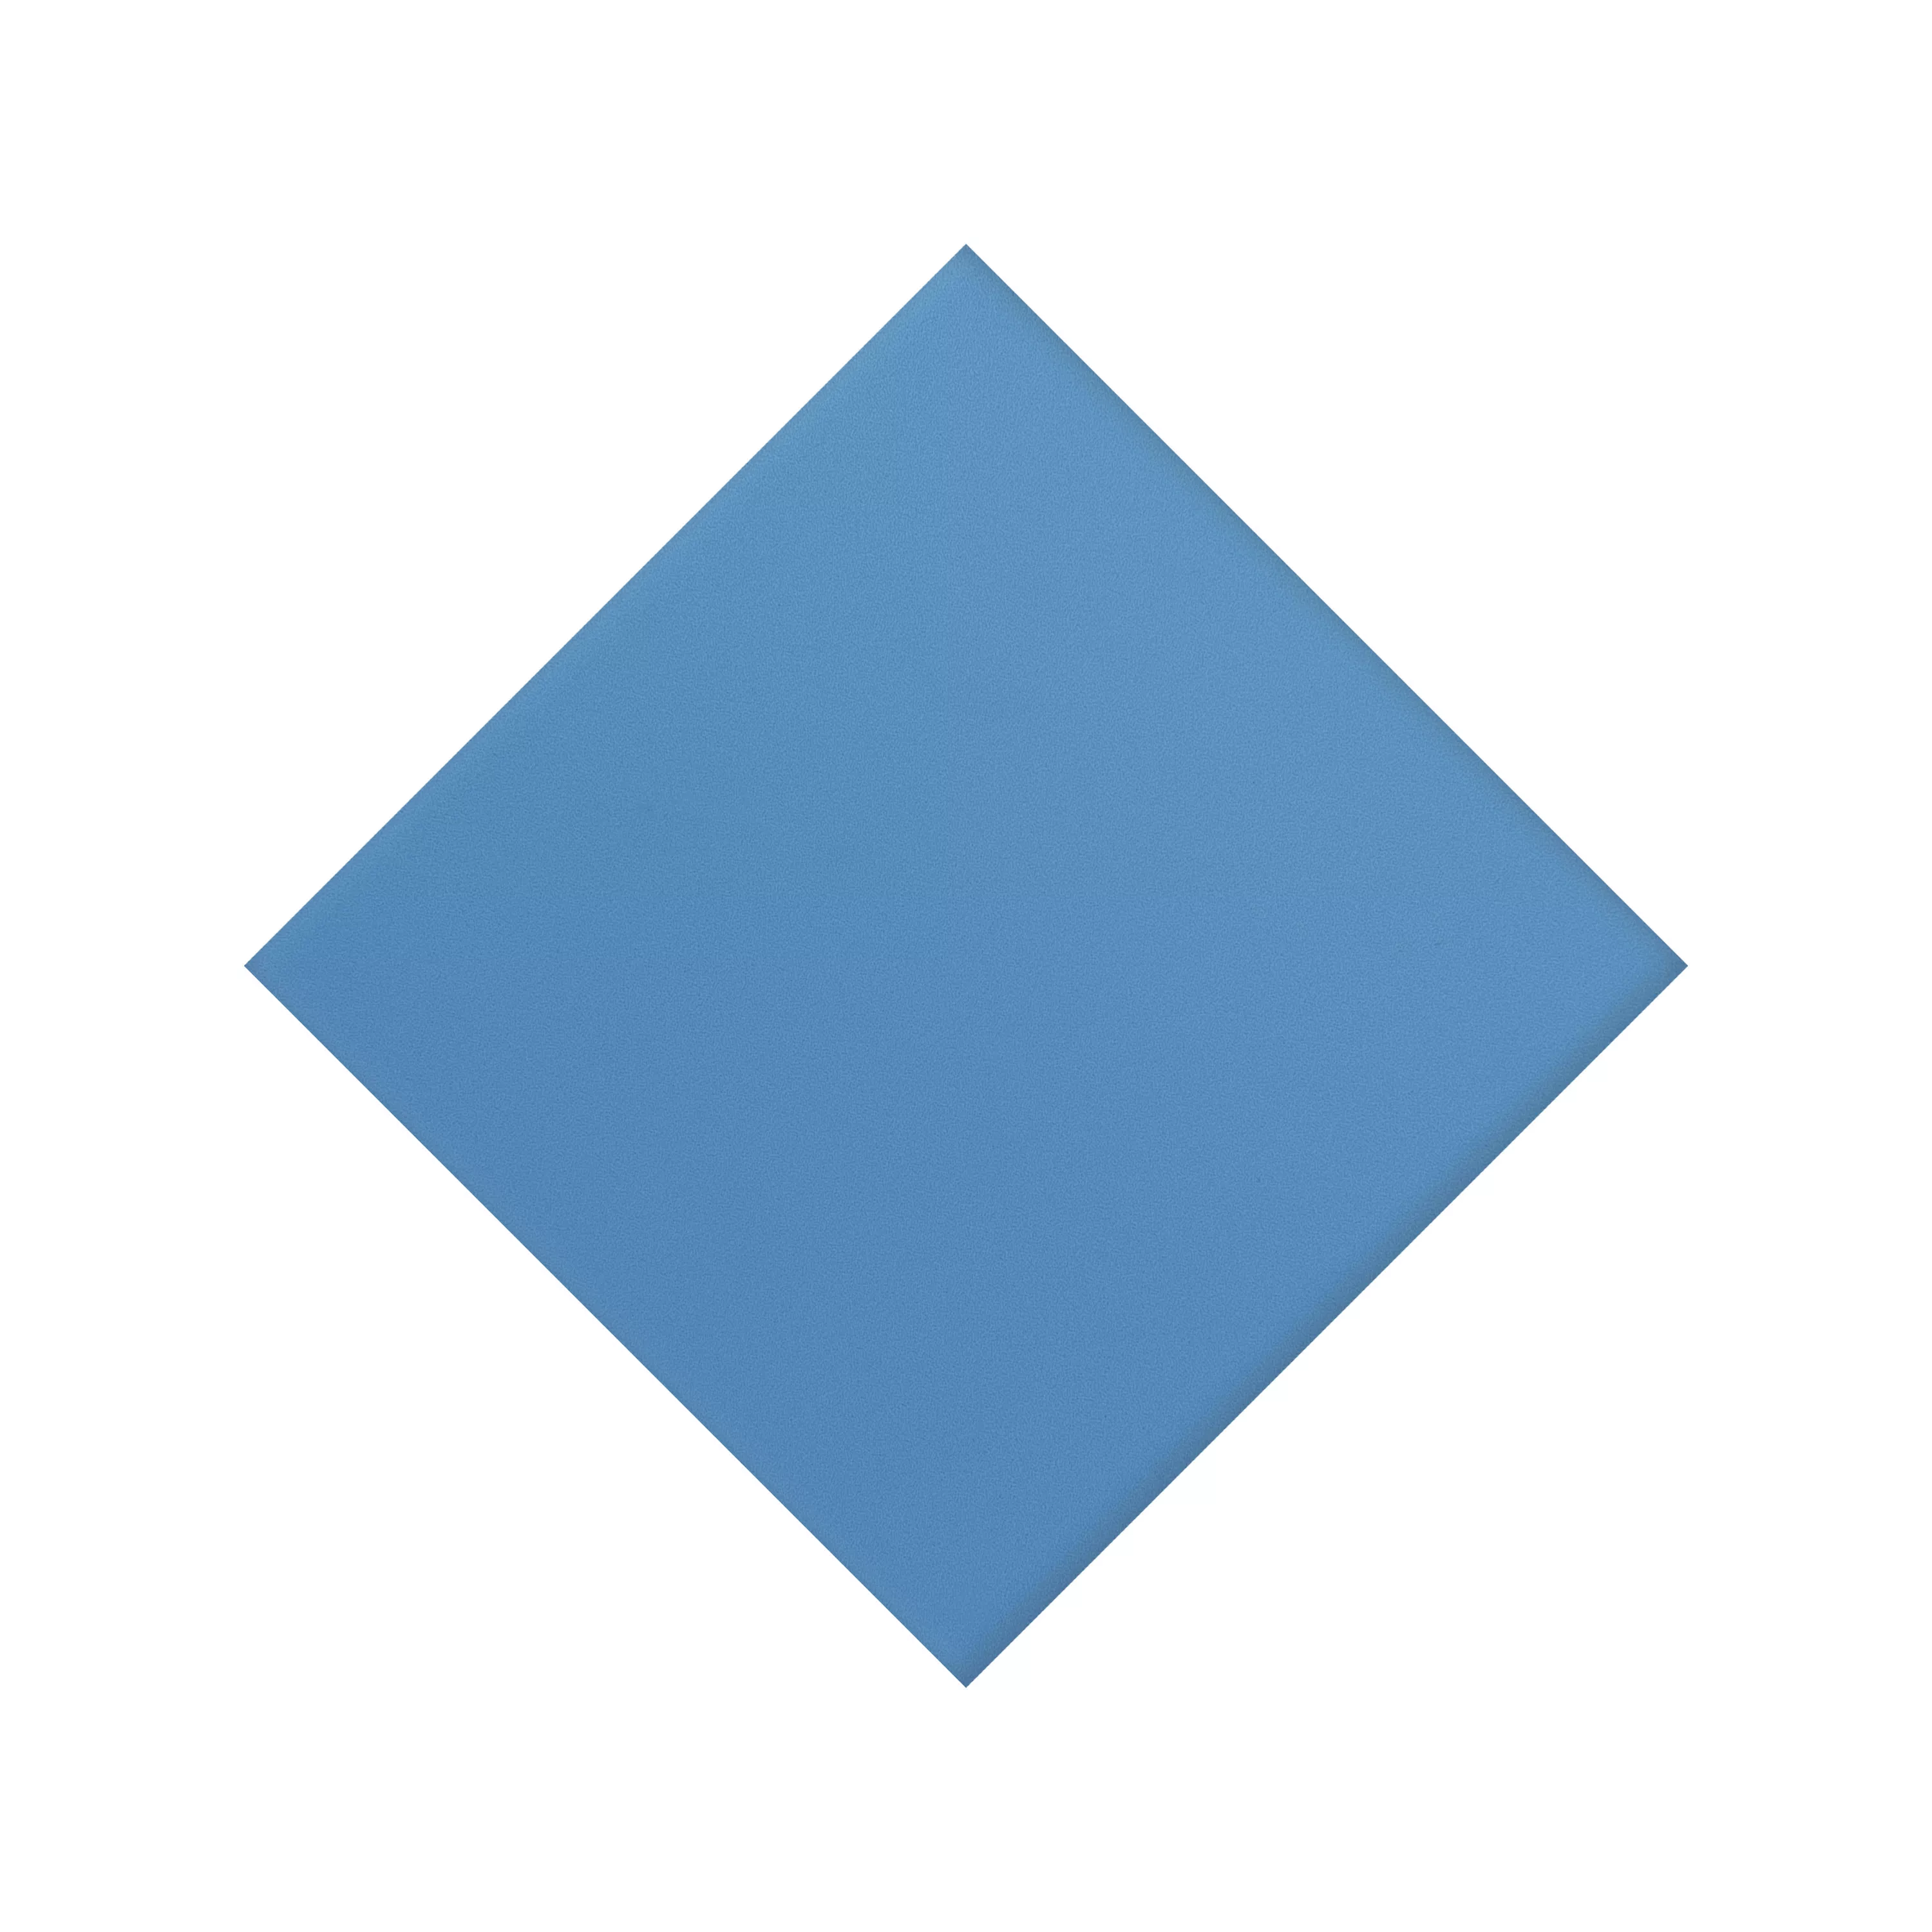 Gresie Portelanata Gresie Genexia Uni Albastru Rosone 4,6x4,6cm